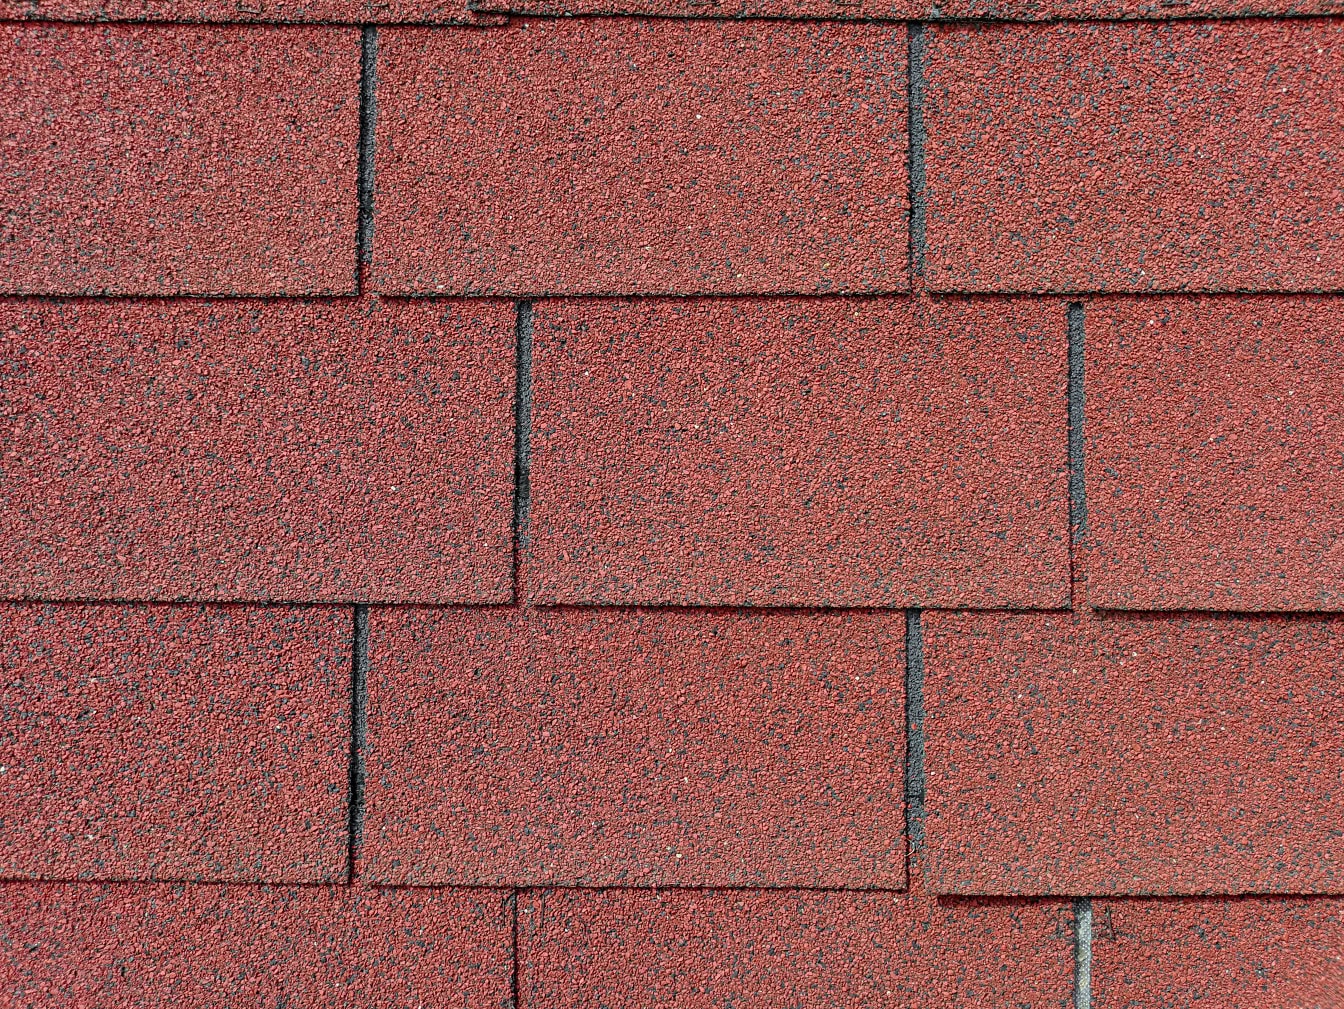 Textura unui acoperiș de șindrilă maro-roșiatică închisă, de formă dreptunghiulară, realizată dintr-un amestec de bitum, cauciuc și plastic reciclat